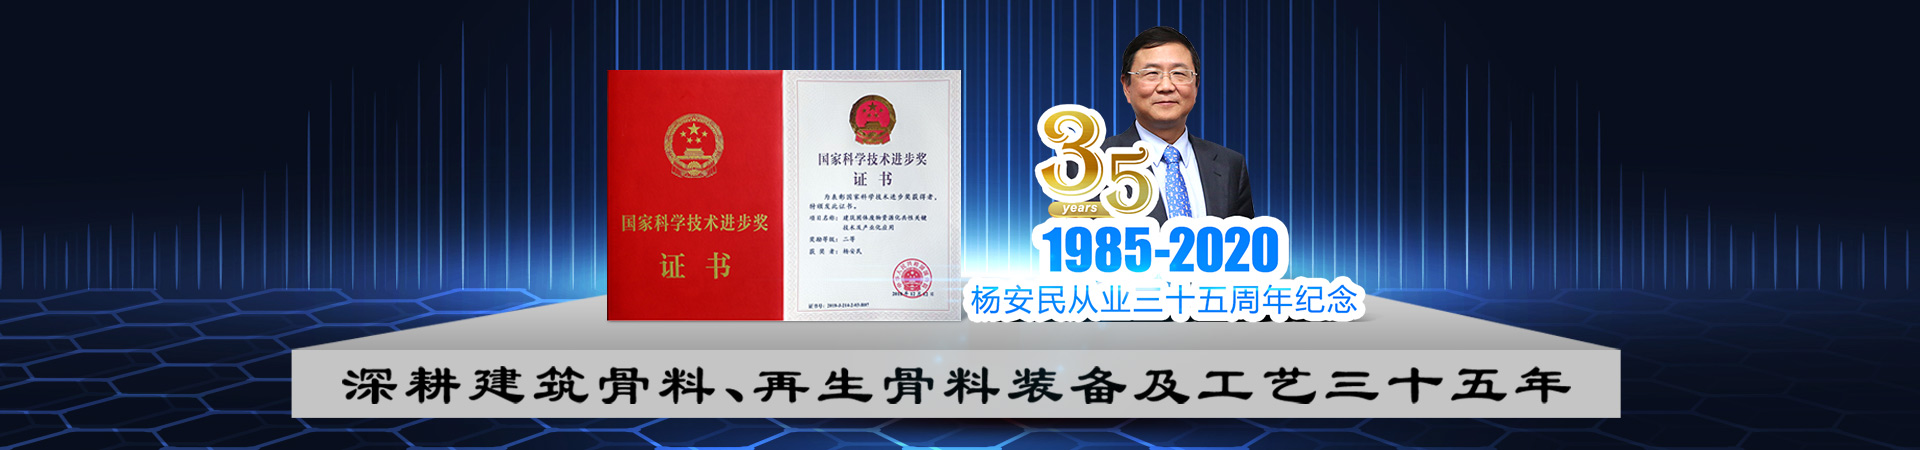 杨安民董事长从业35周年纪念活动